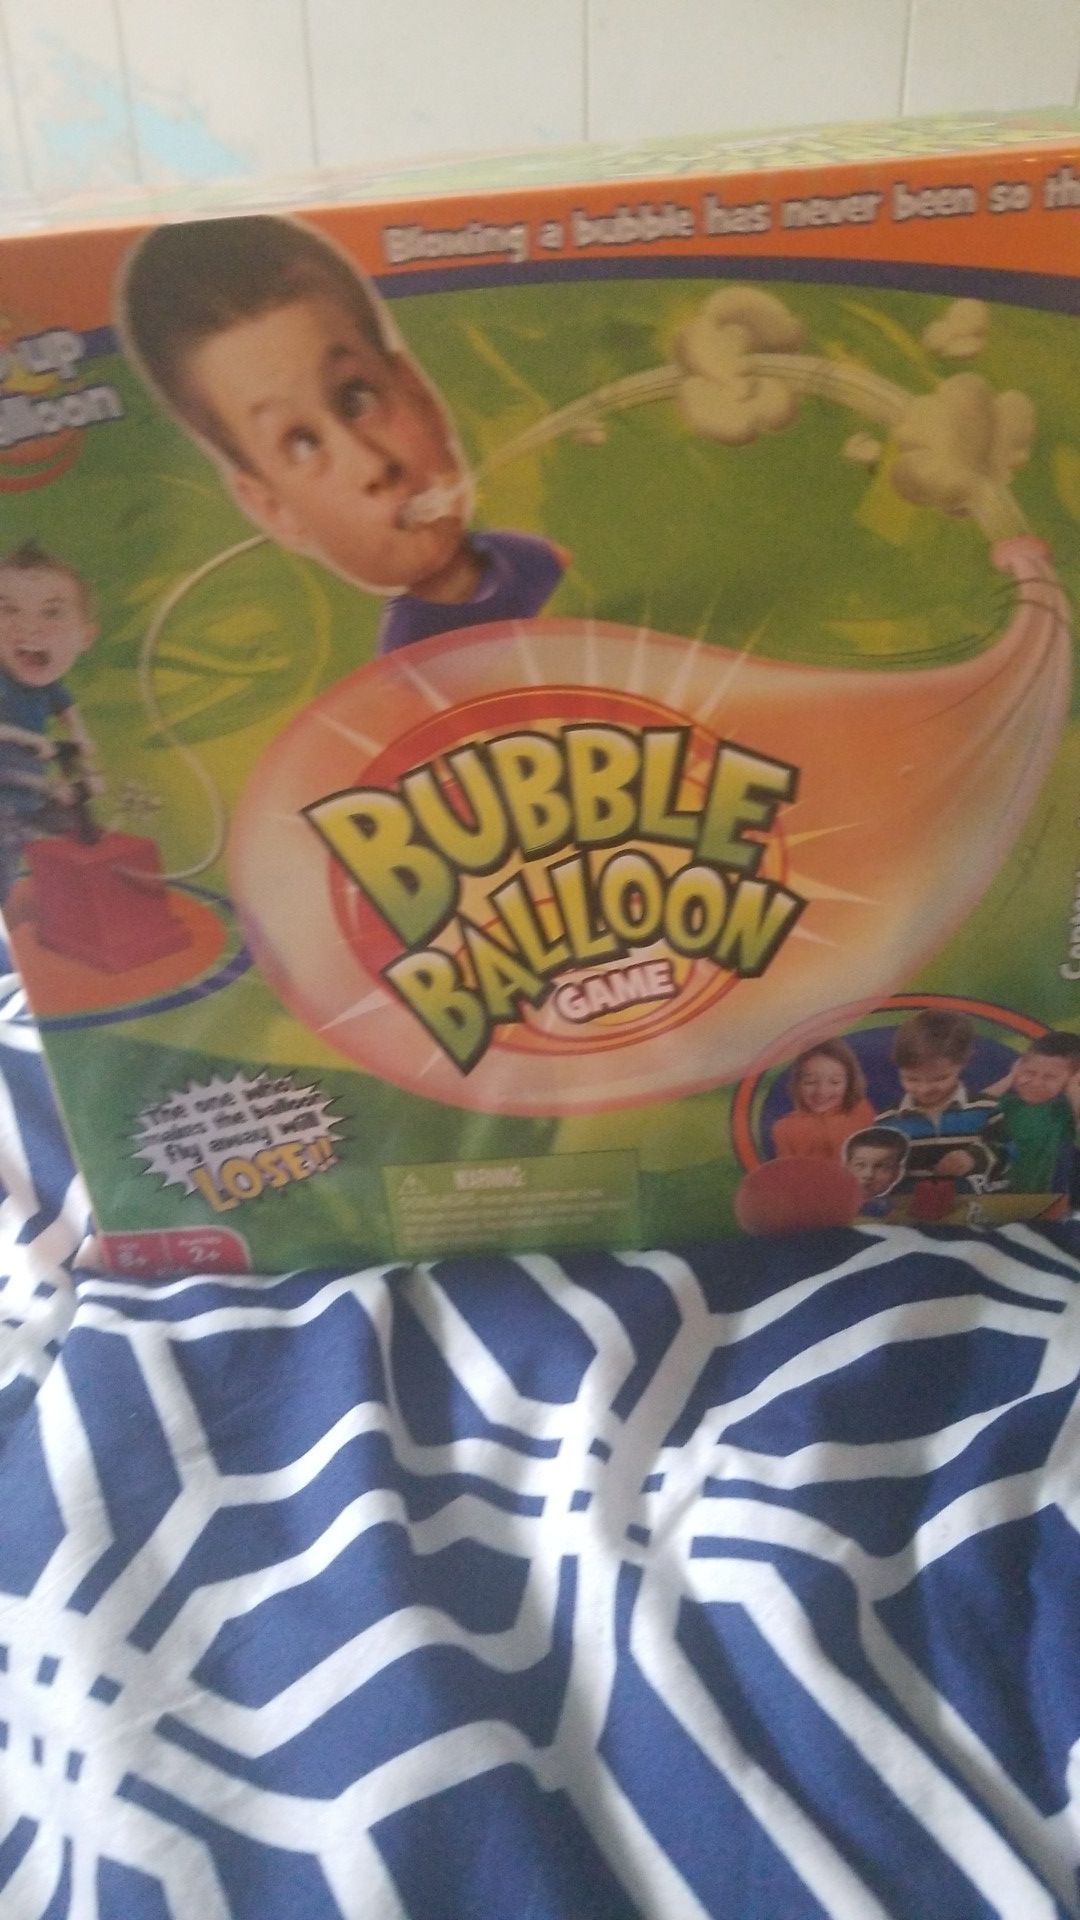 Bubble balloon game.